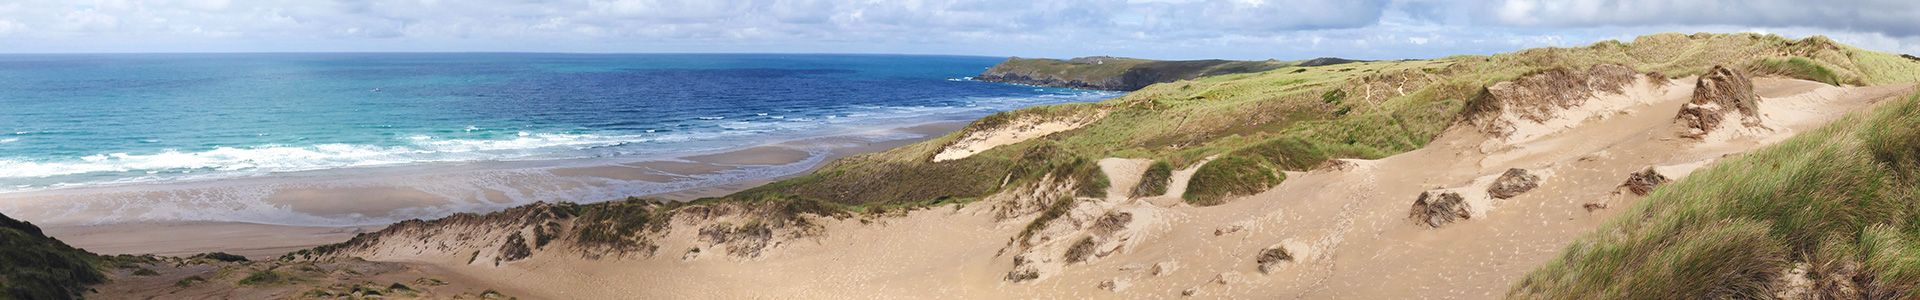 Cornish Beach Image